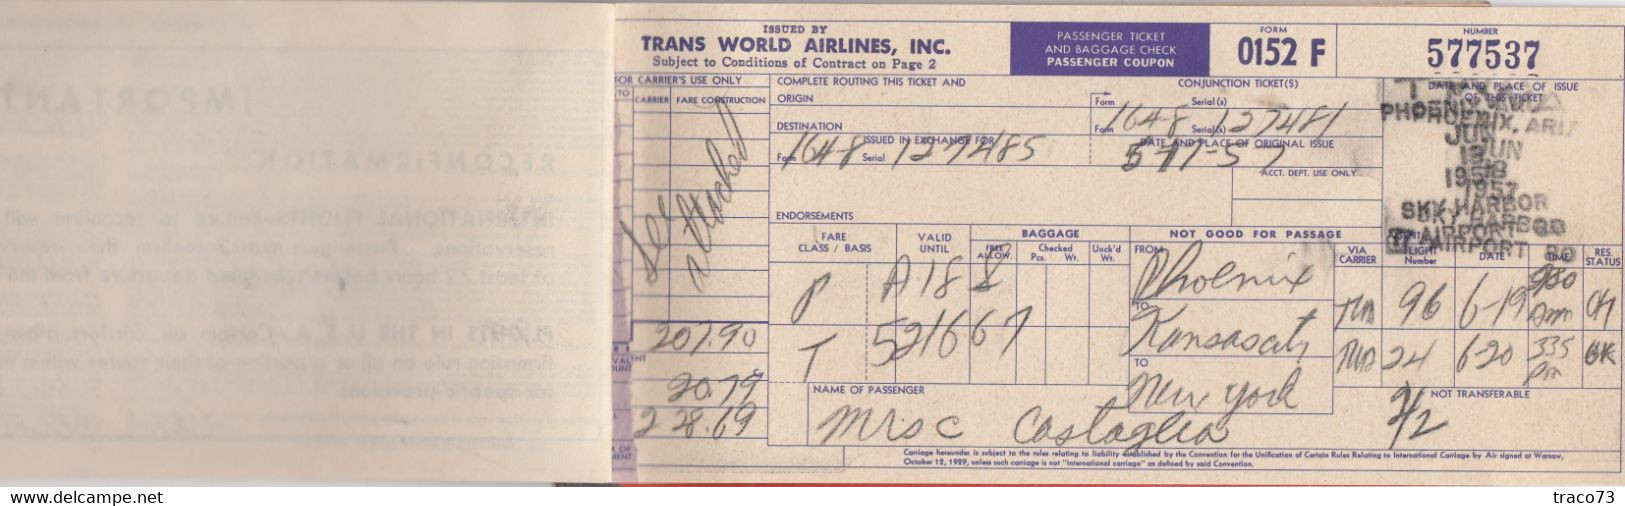 TRANS WORLD AIRLINES  - TWA  /  BIGLIETTO COMPLETO DI CUSTODIA _ PASSENGER TICKET AND BAGGAGE CHECK _ 1957 - Monde